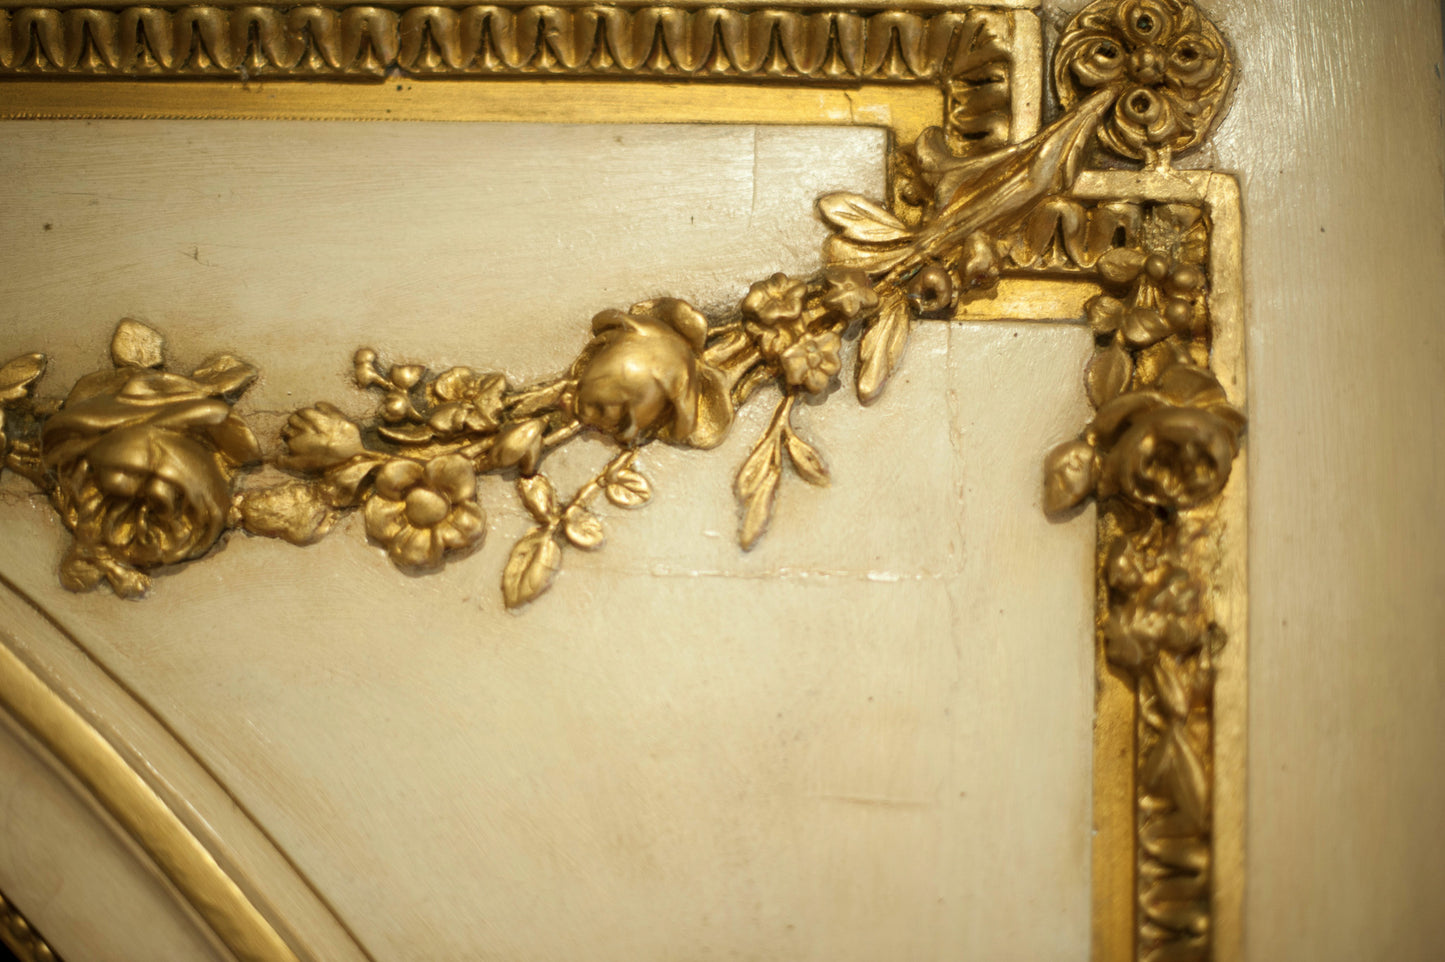 French Louis XVI Mirror